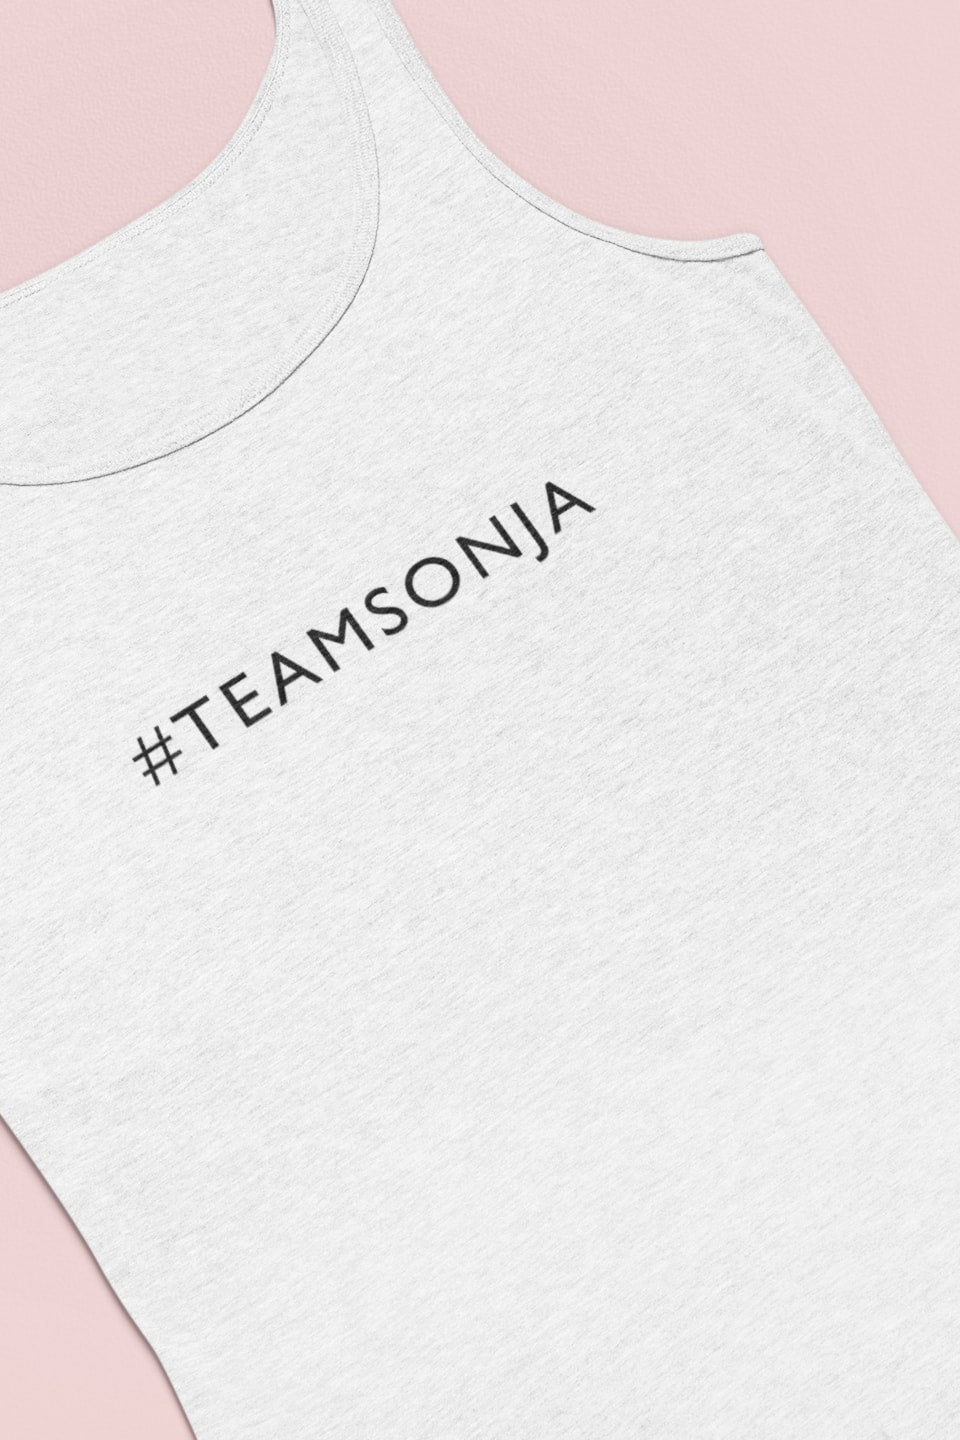 #TeamSonja Ladies’ Muscle Tank Top